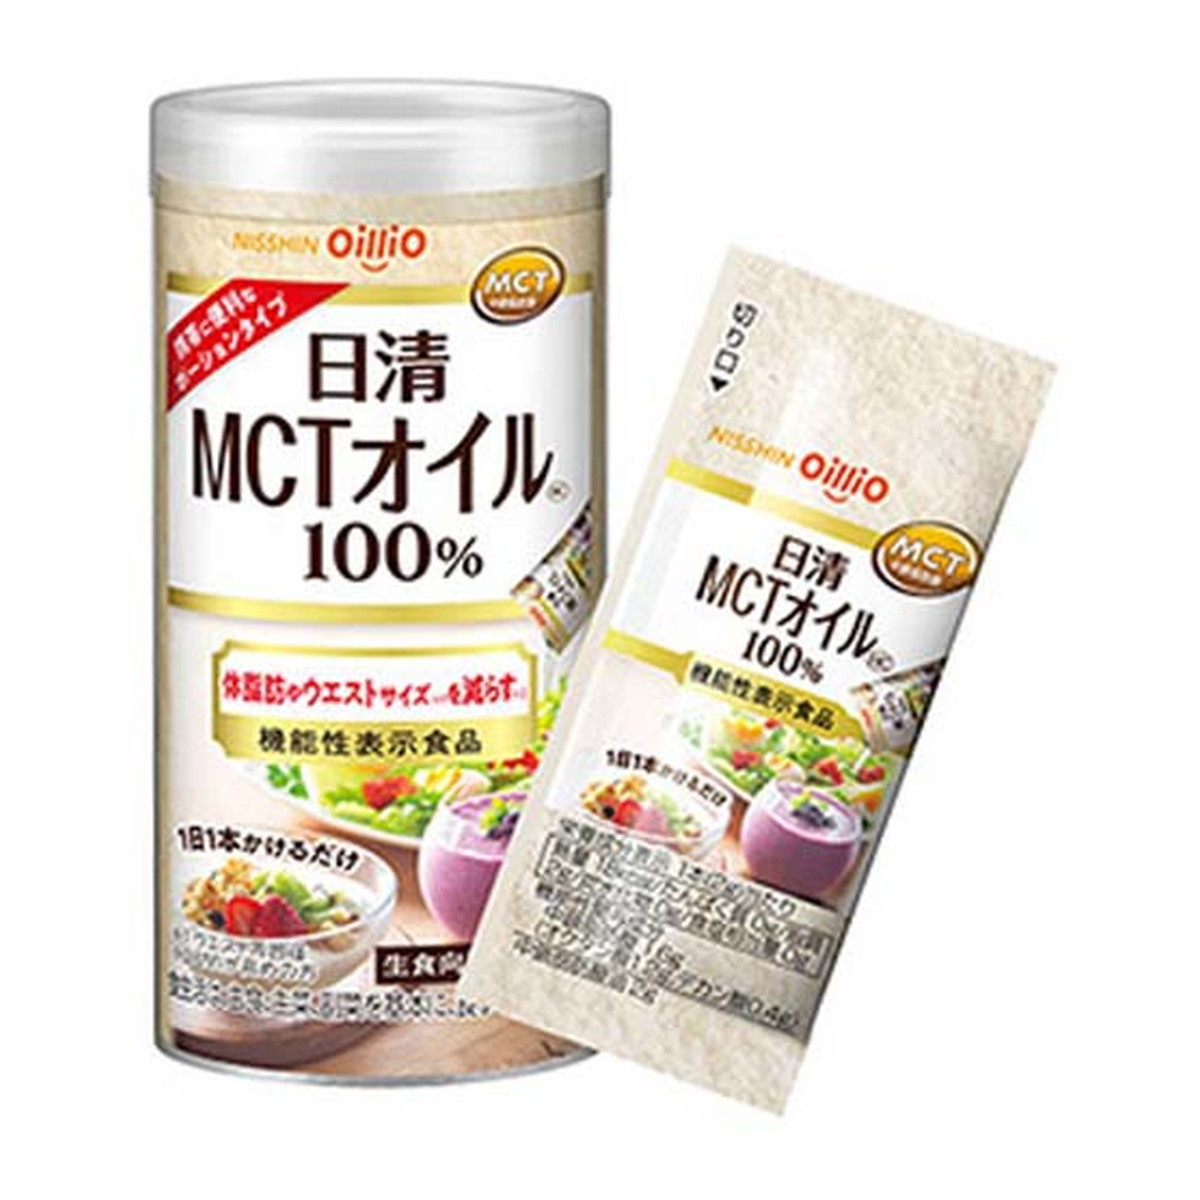 日清オイリオ MCTオイル HC 機能性表示食品 2g×15本 1個の商品画像